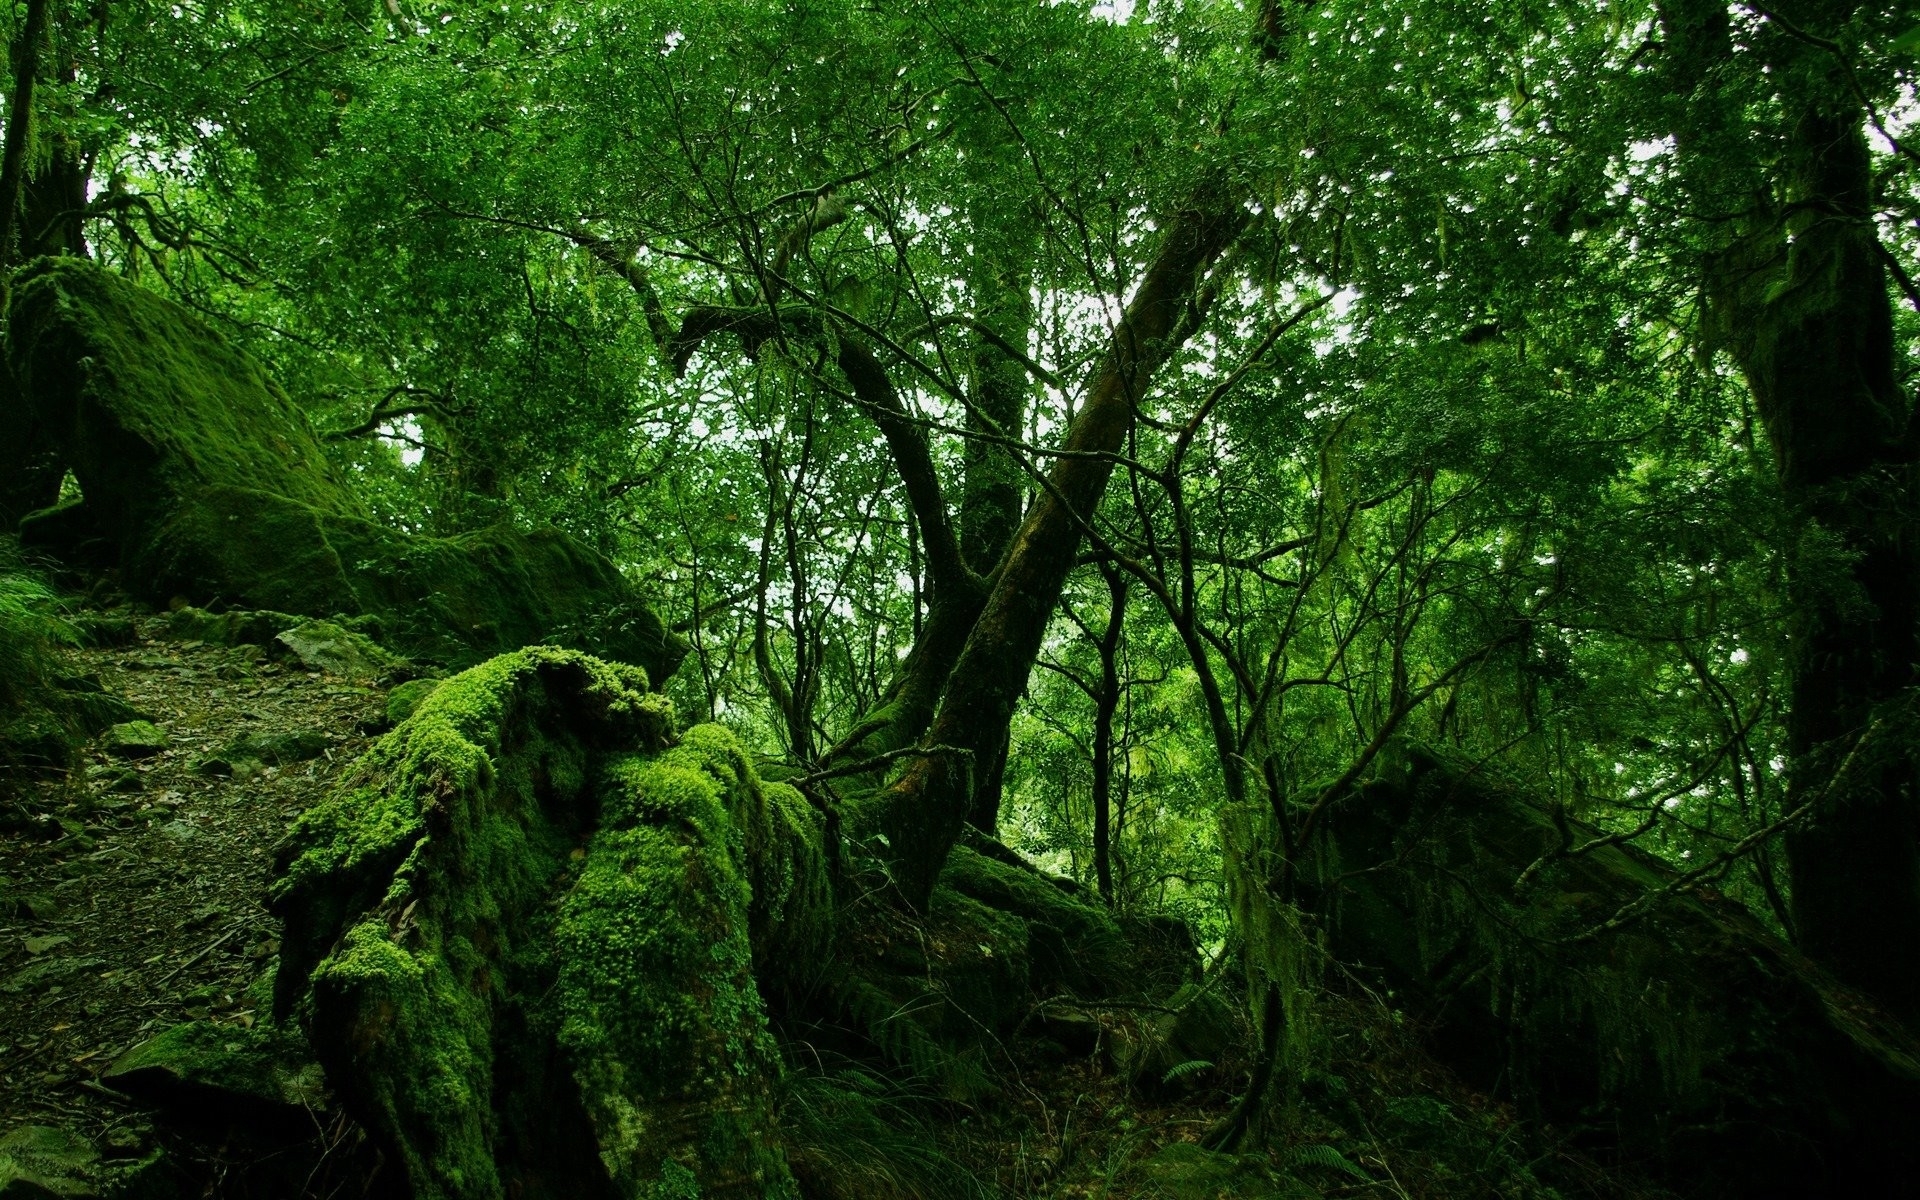 Landscape trees, green HD desktop images